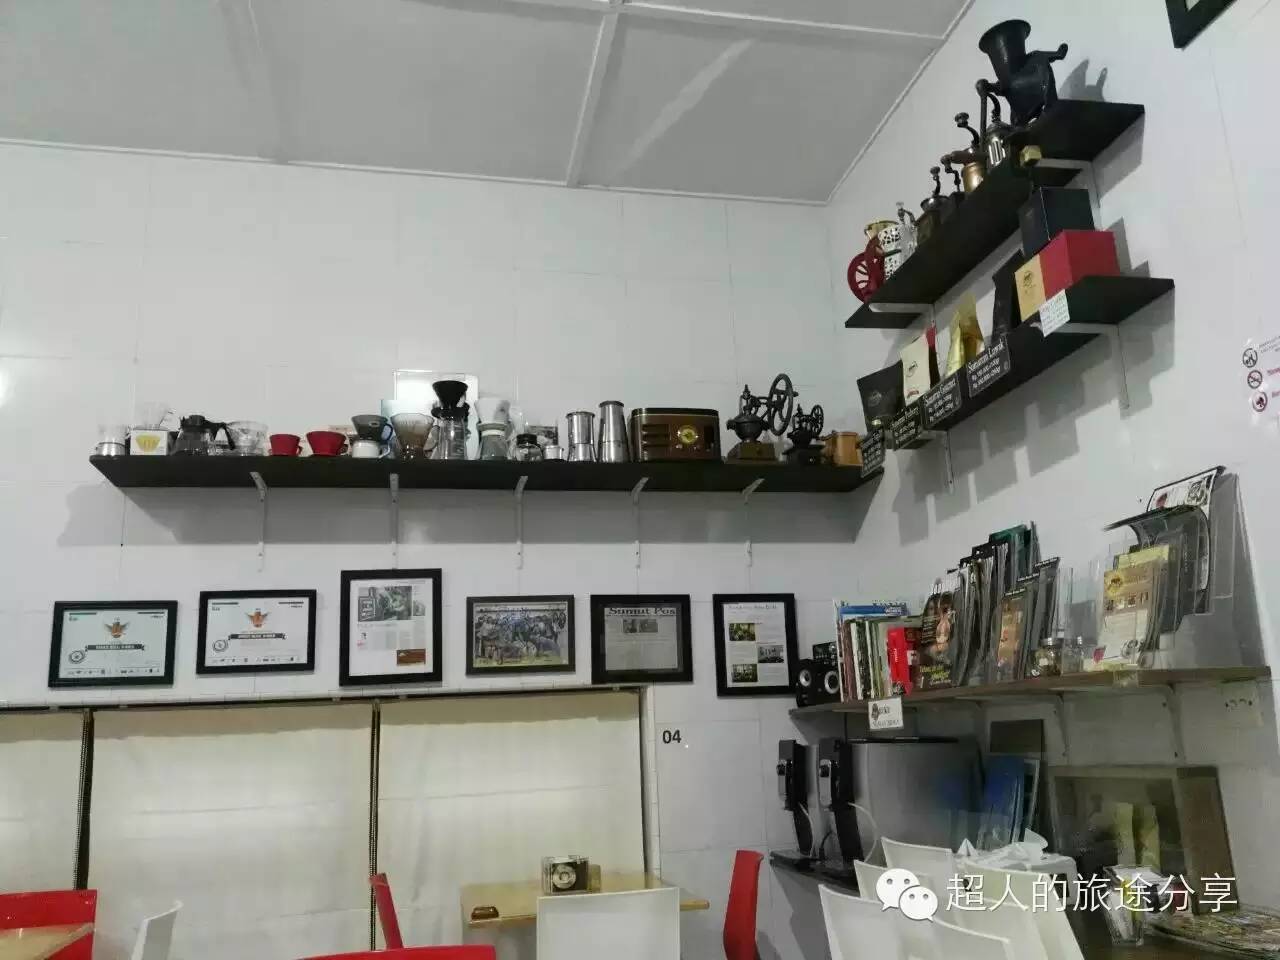 探访印尼的咖啡厅